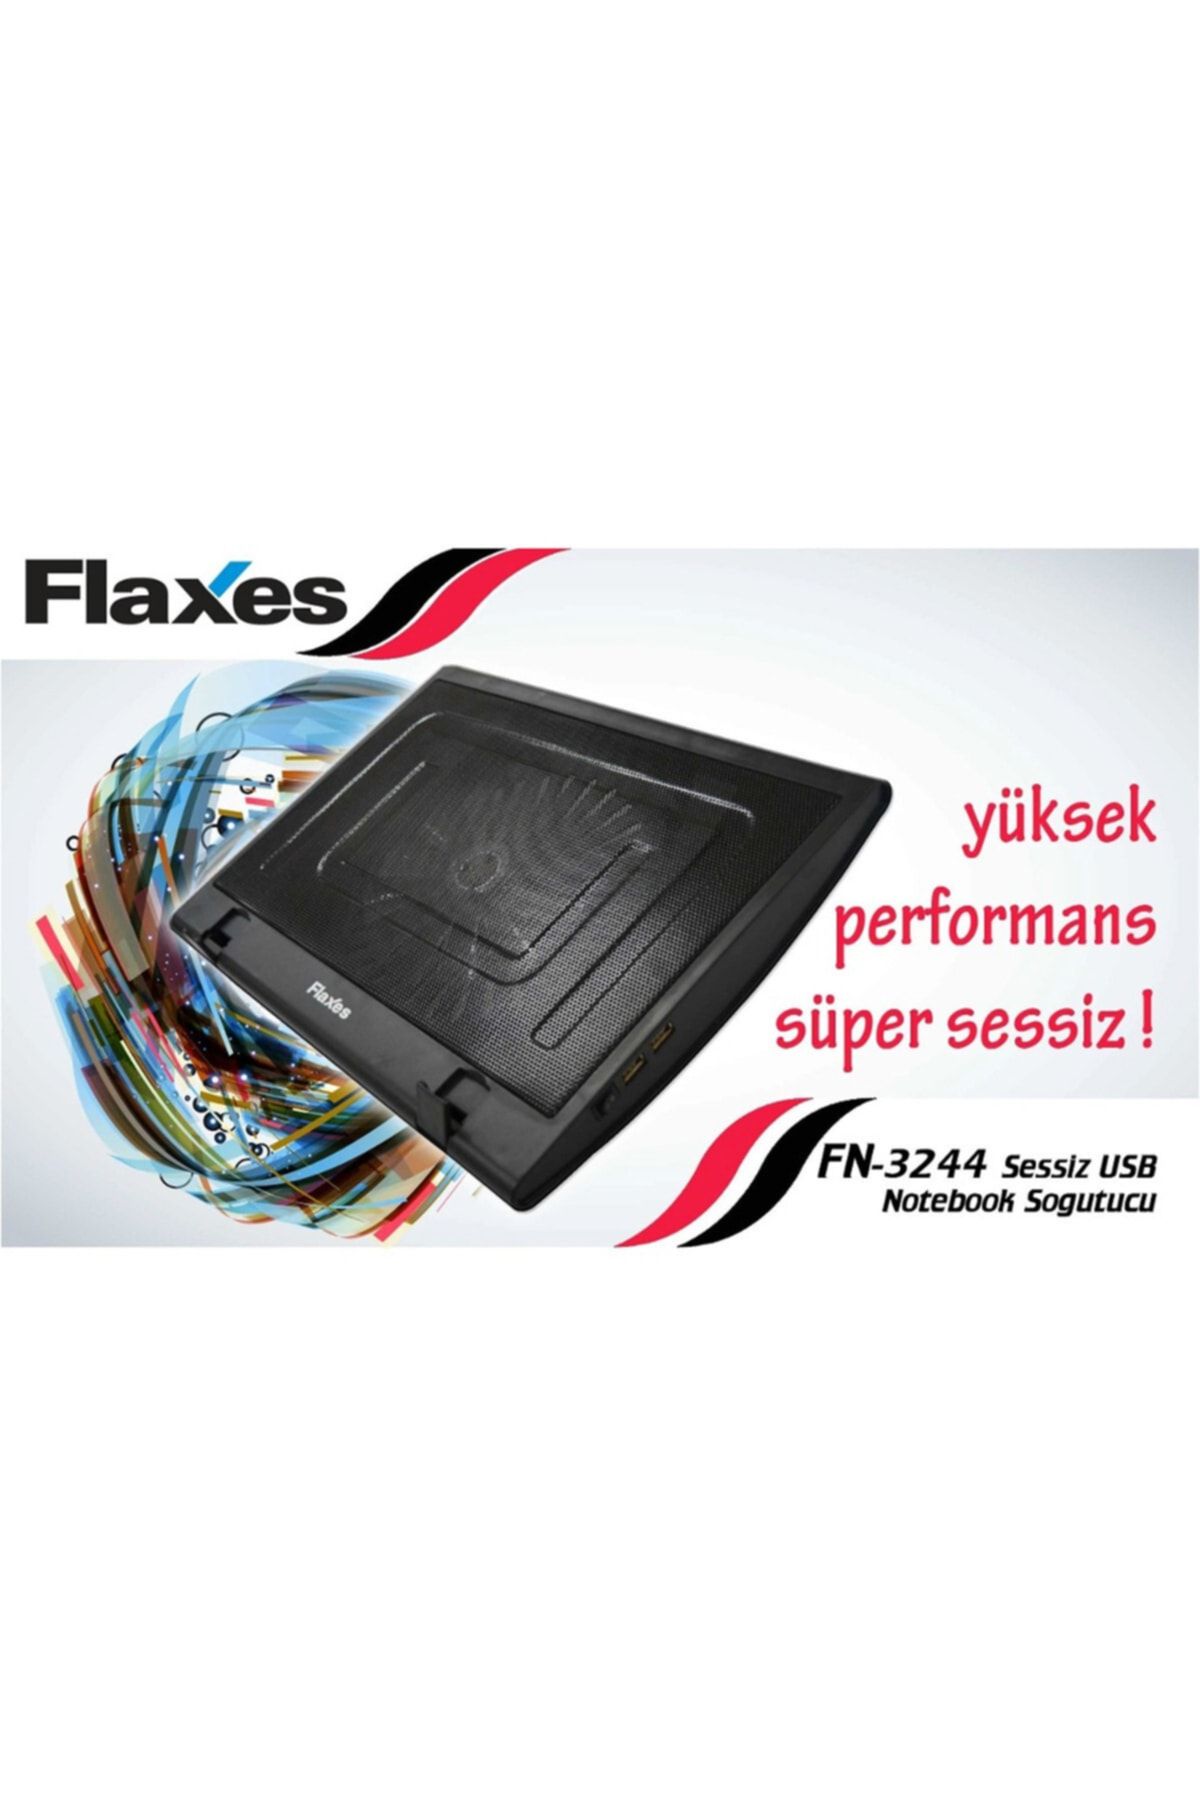 FLAXES Ayaklı Sessiz Fanlı Notebook Soğutucu fn-3244